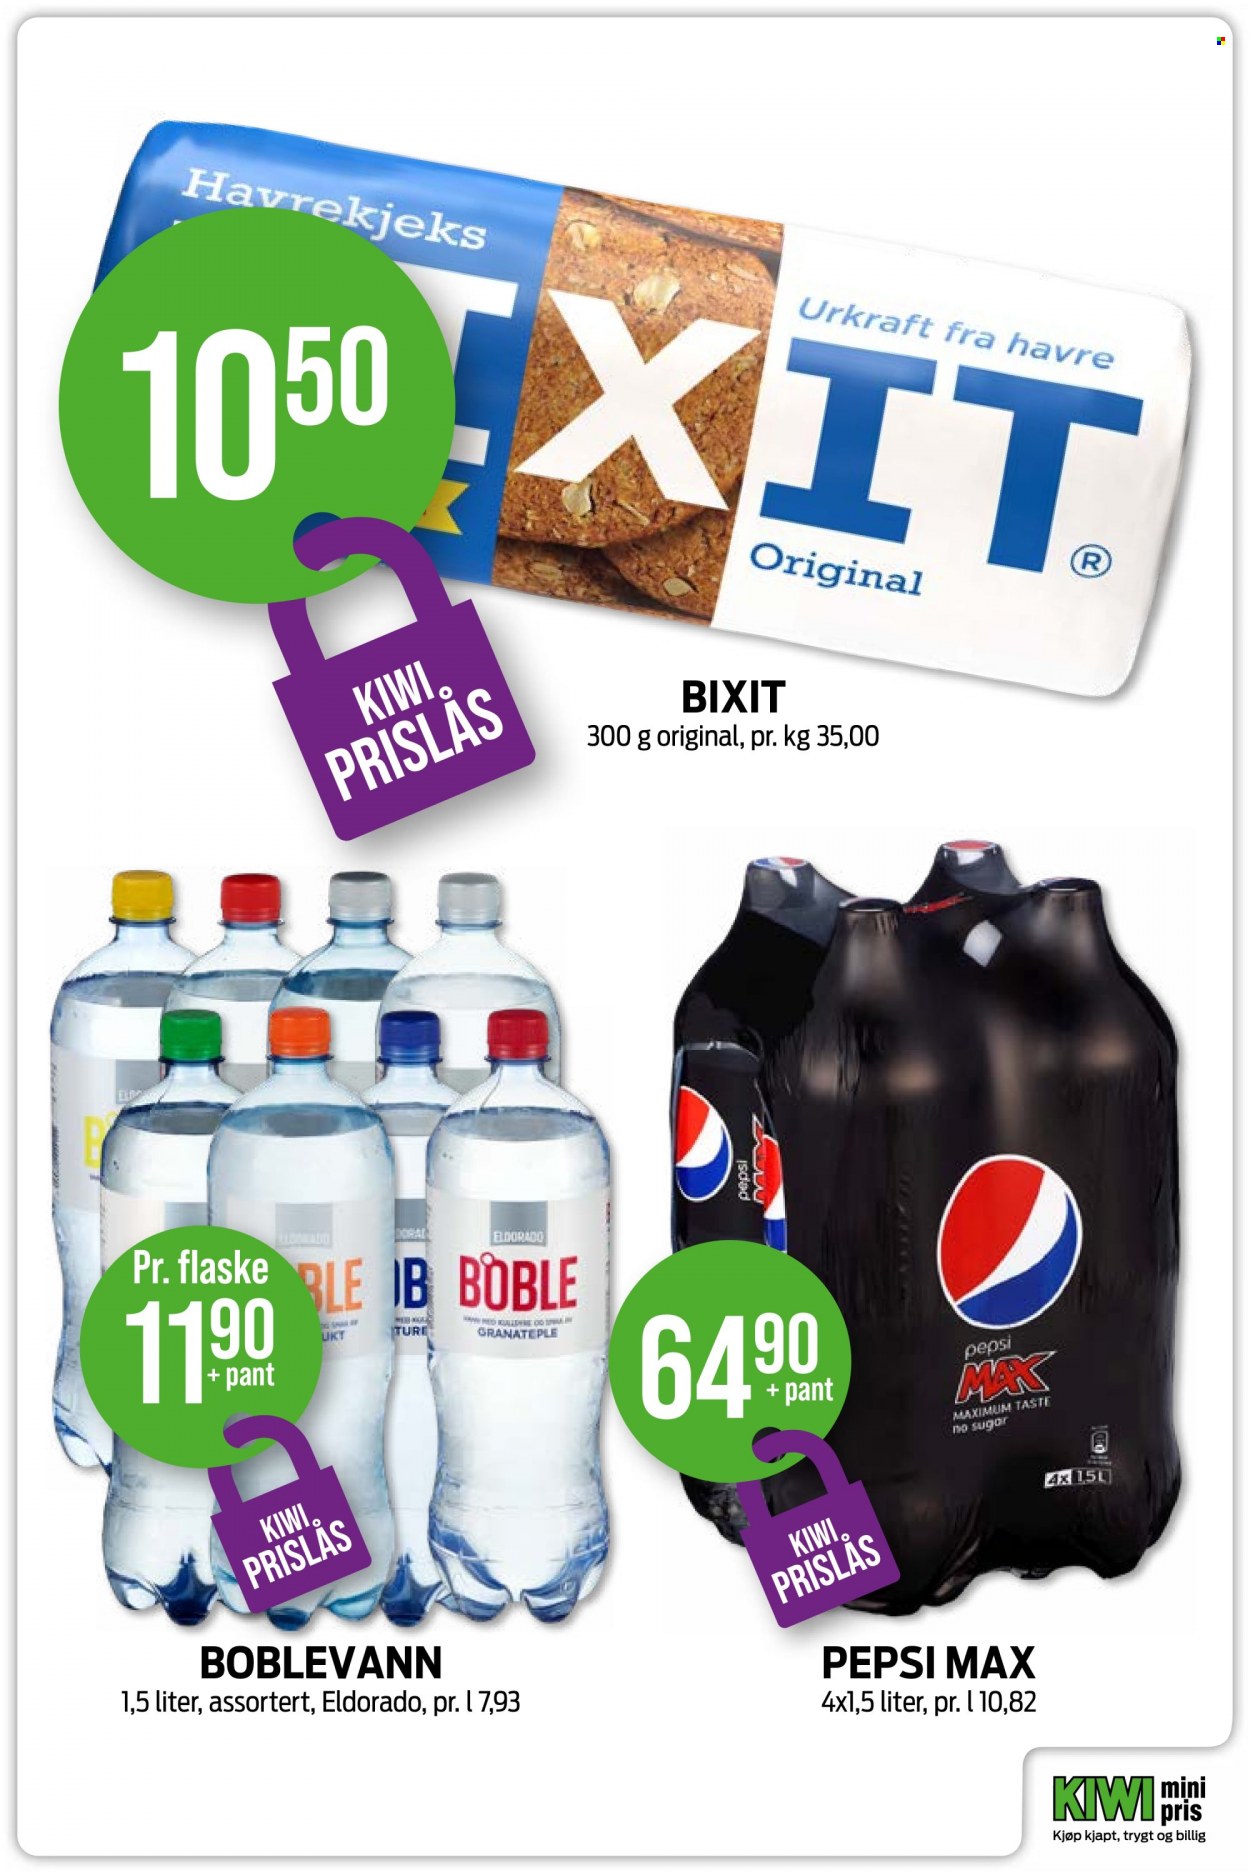 thumbnail - Kundeavis KIWI - Produkter fra tilbudsaviser - havre, havrekjeks, Pepsi, Pepsi Max. Side 7.